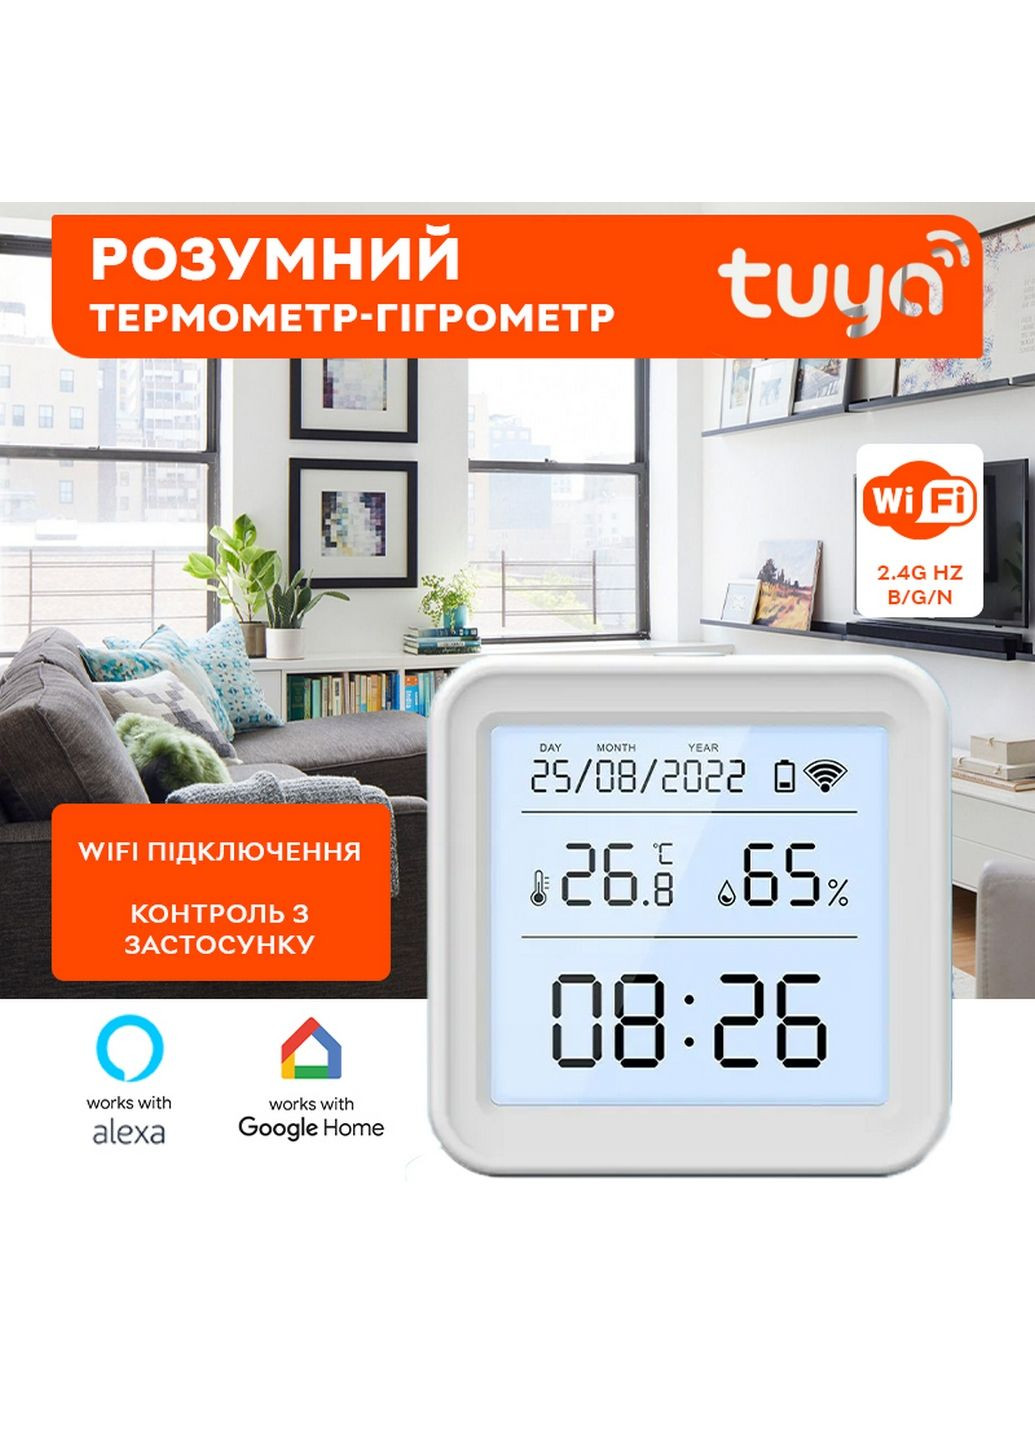 Умный Wi-Fi датчик температуры и влажности воздуха с подсветкой, wifi термометр, гигрометр SmartLife 2 TUYA (293477779)